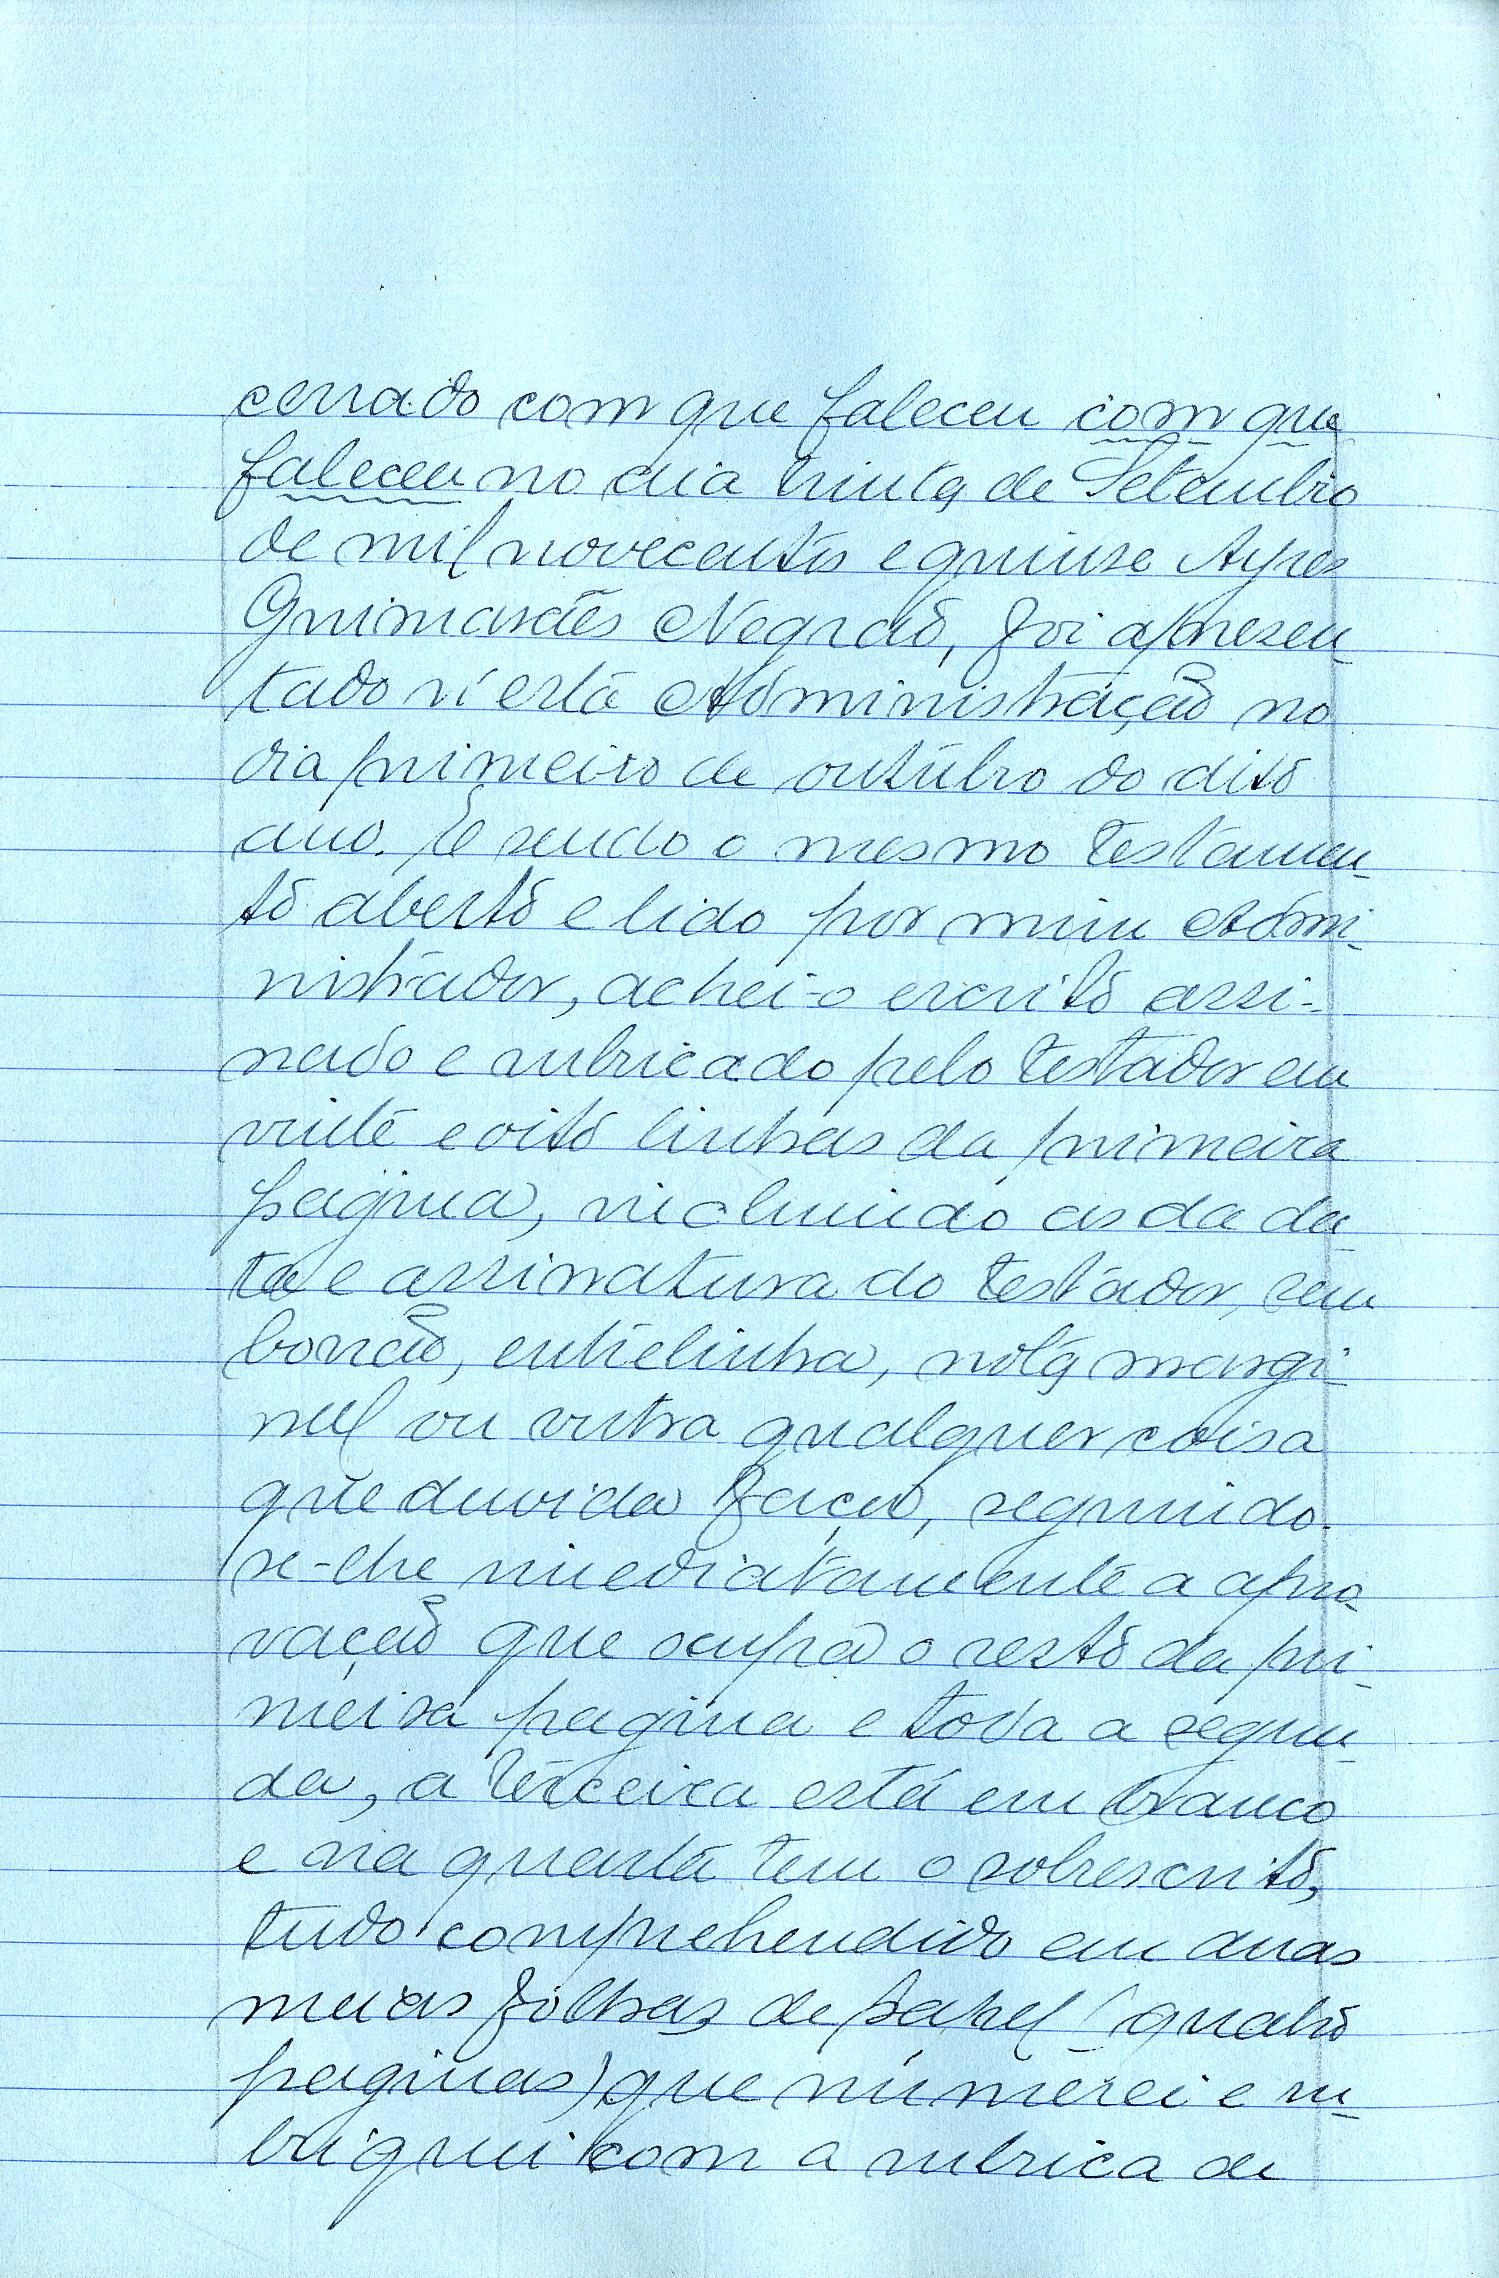 Registo do testamento com que faleceu Aires Guimarães Negrão, Coronel de Infantaria do quadro de reserva